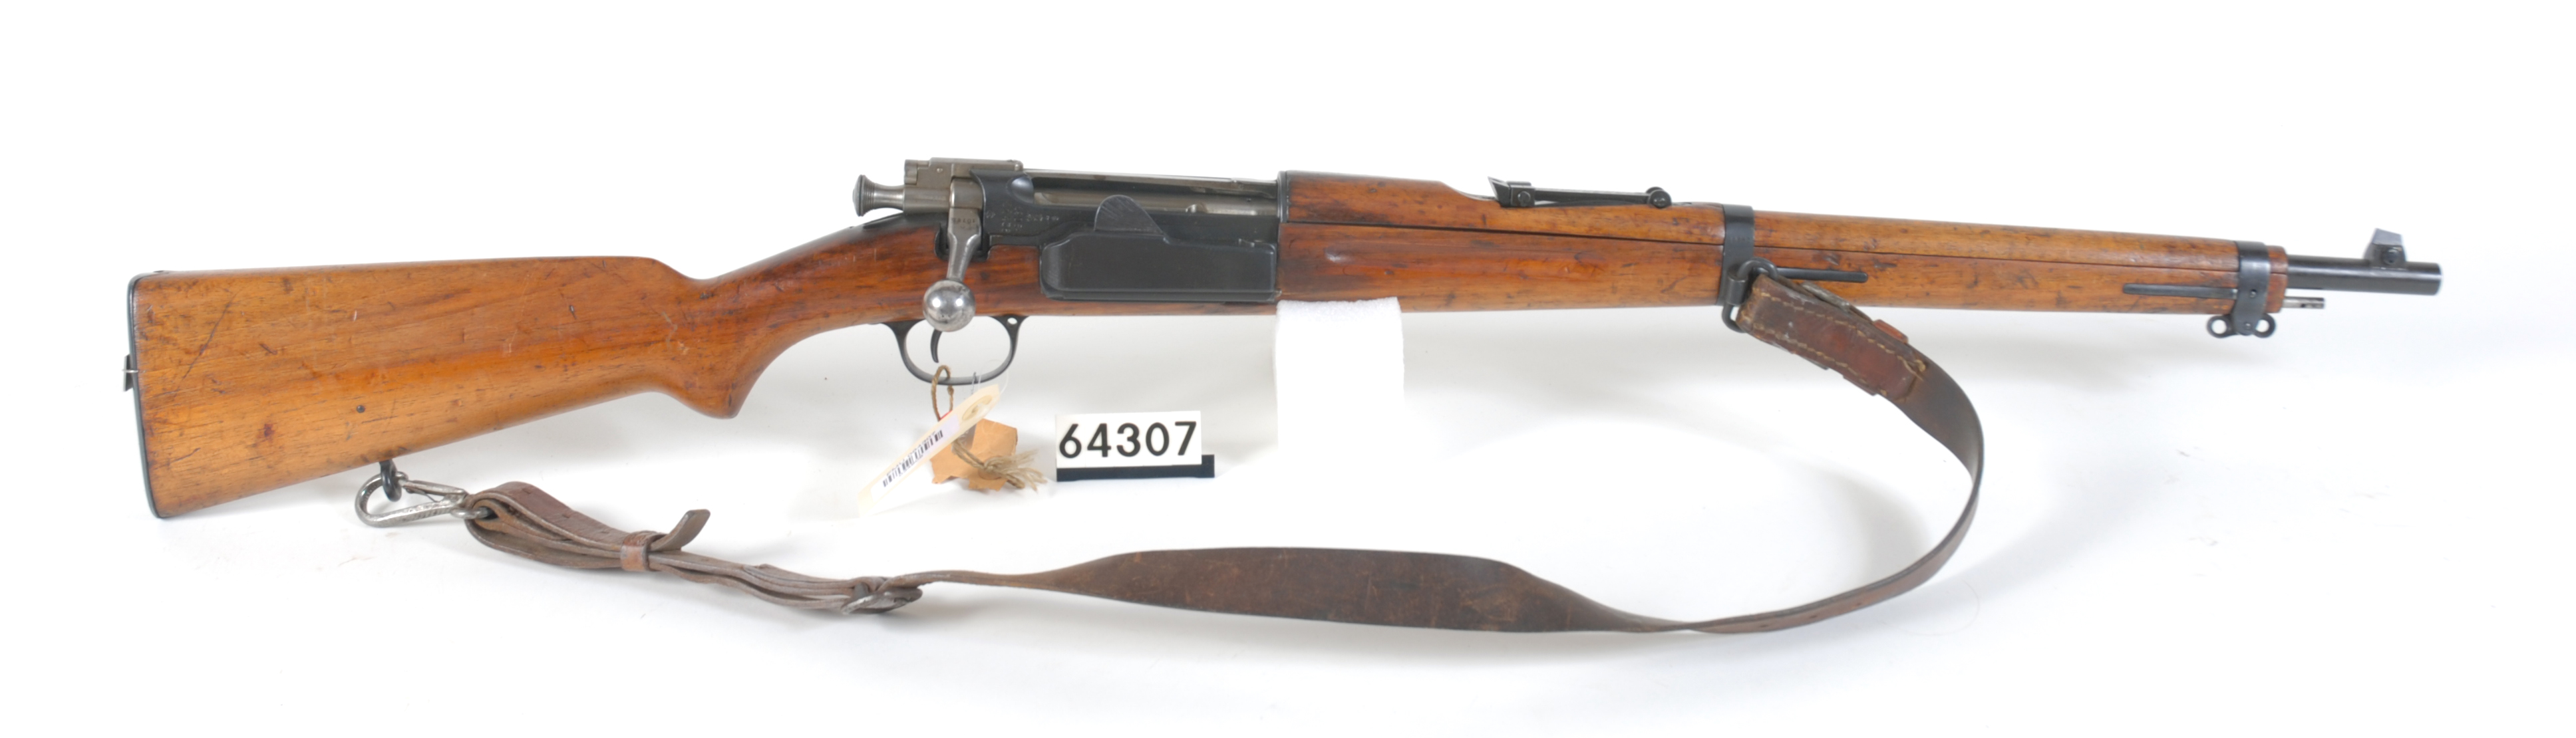 ./guns/rifle/bilder/Rifle-Kongsberg-Krag-M1907-FMU.064307.jpg